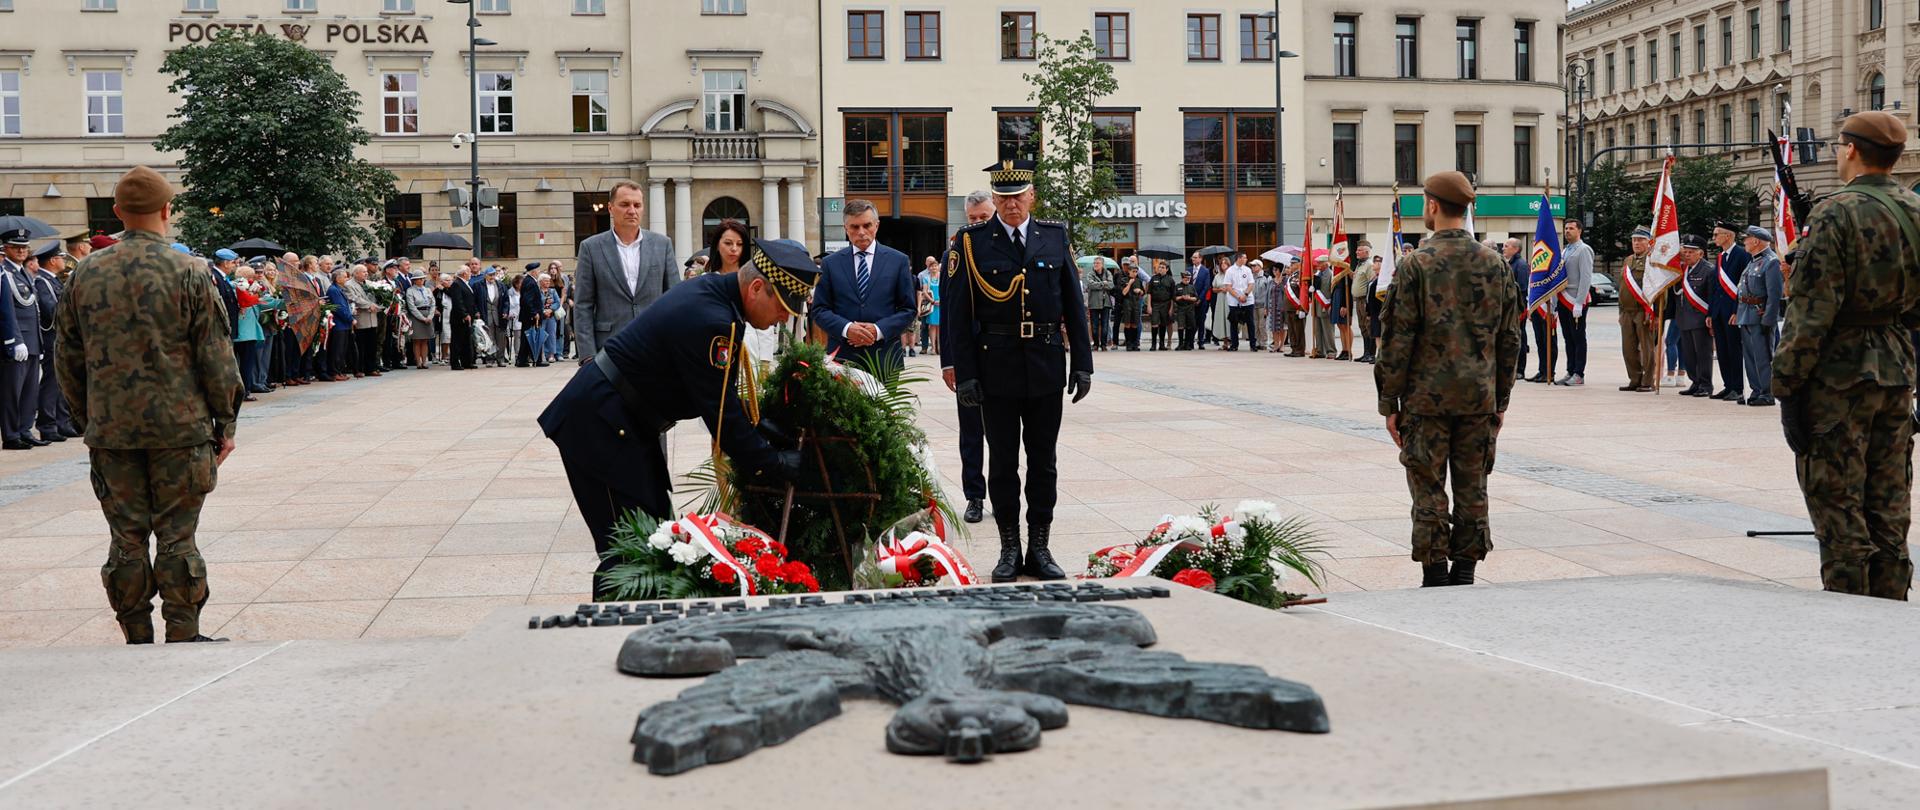 Wojewoda lubelski Lech Sprawka składa kwiaty przed pomnikiem nieznanego żołnierza w Lublinie.